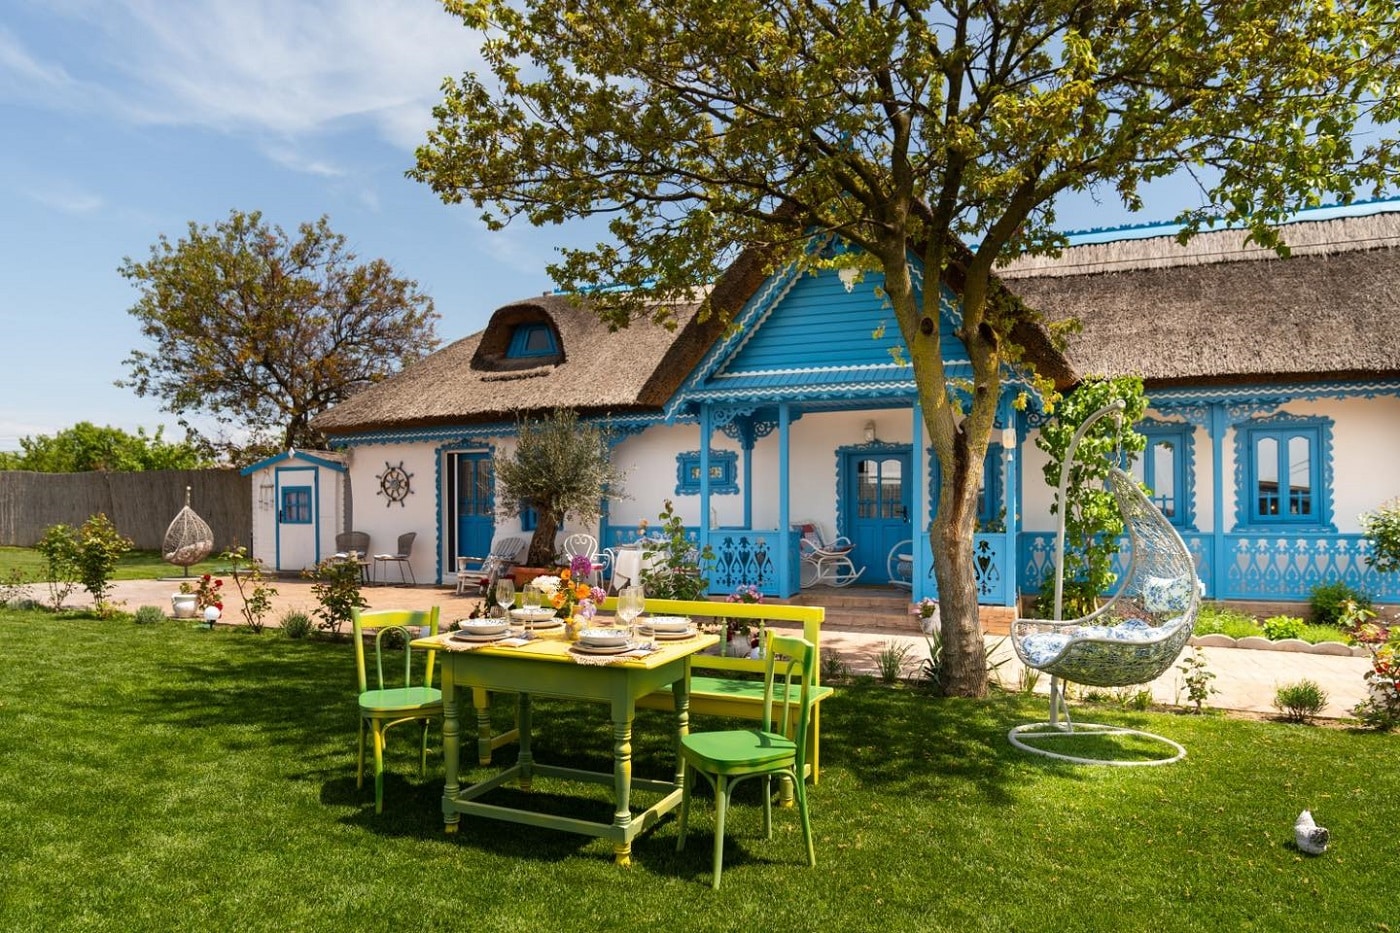 Casa Ilinca din Jurilovca, alba si cu barne si pridvor vopsite albastru, iar in fata gazon cu o masa pe care este asezata vesela. Restaurante de la sate, România culinară tradițională